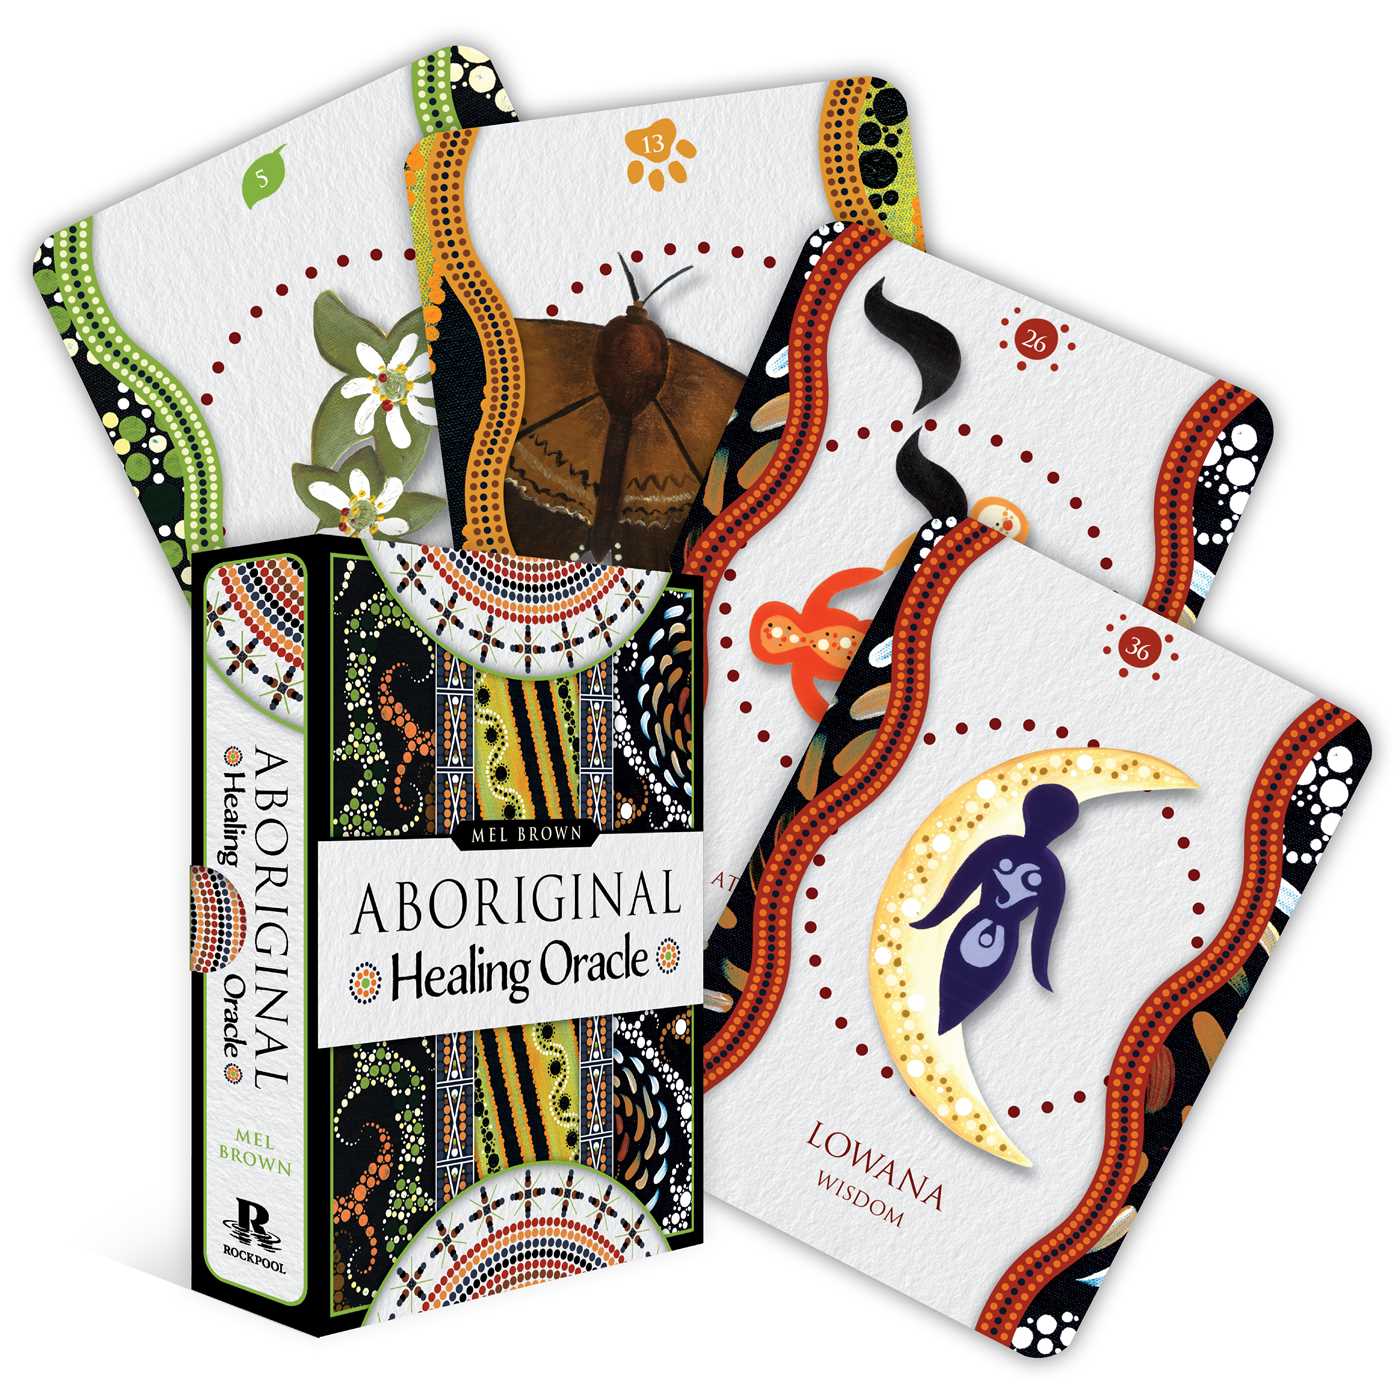 Aboriginal Healing Oracle (Rockpool Oracles) by Mel Brown